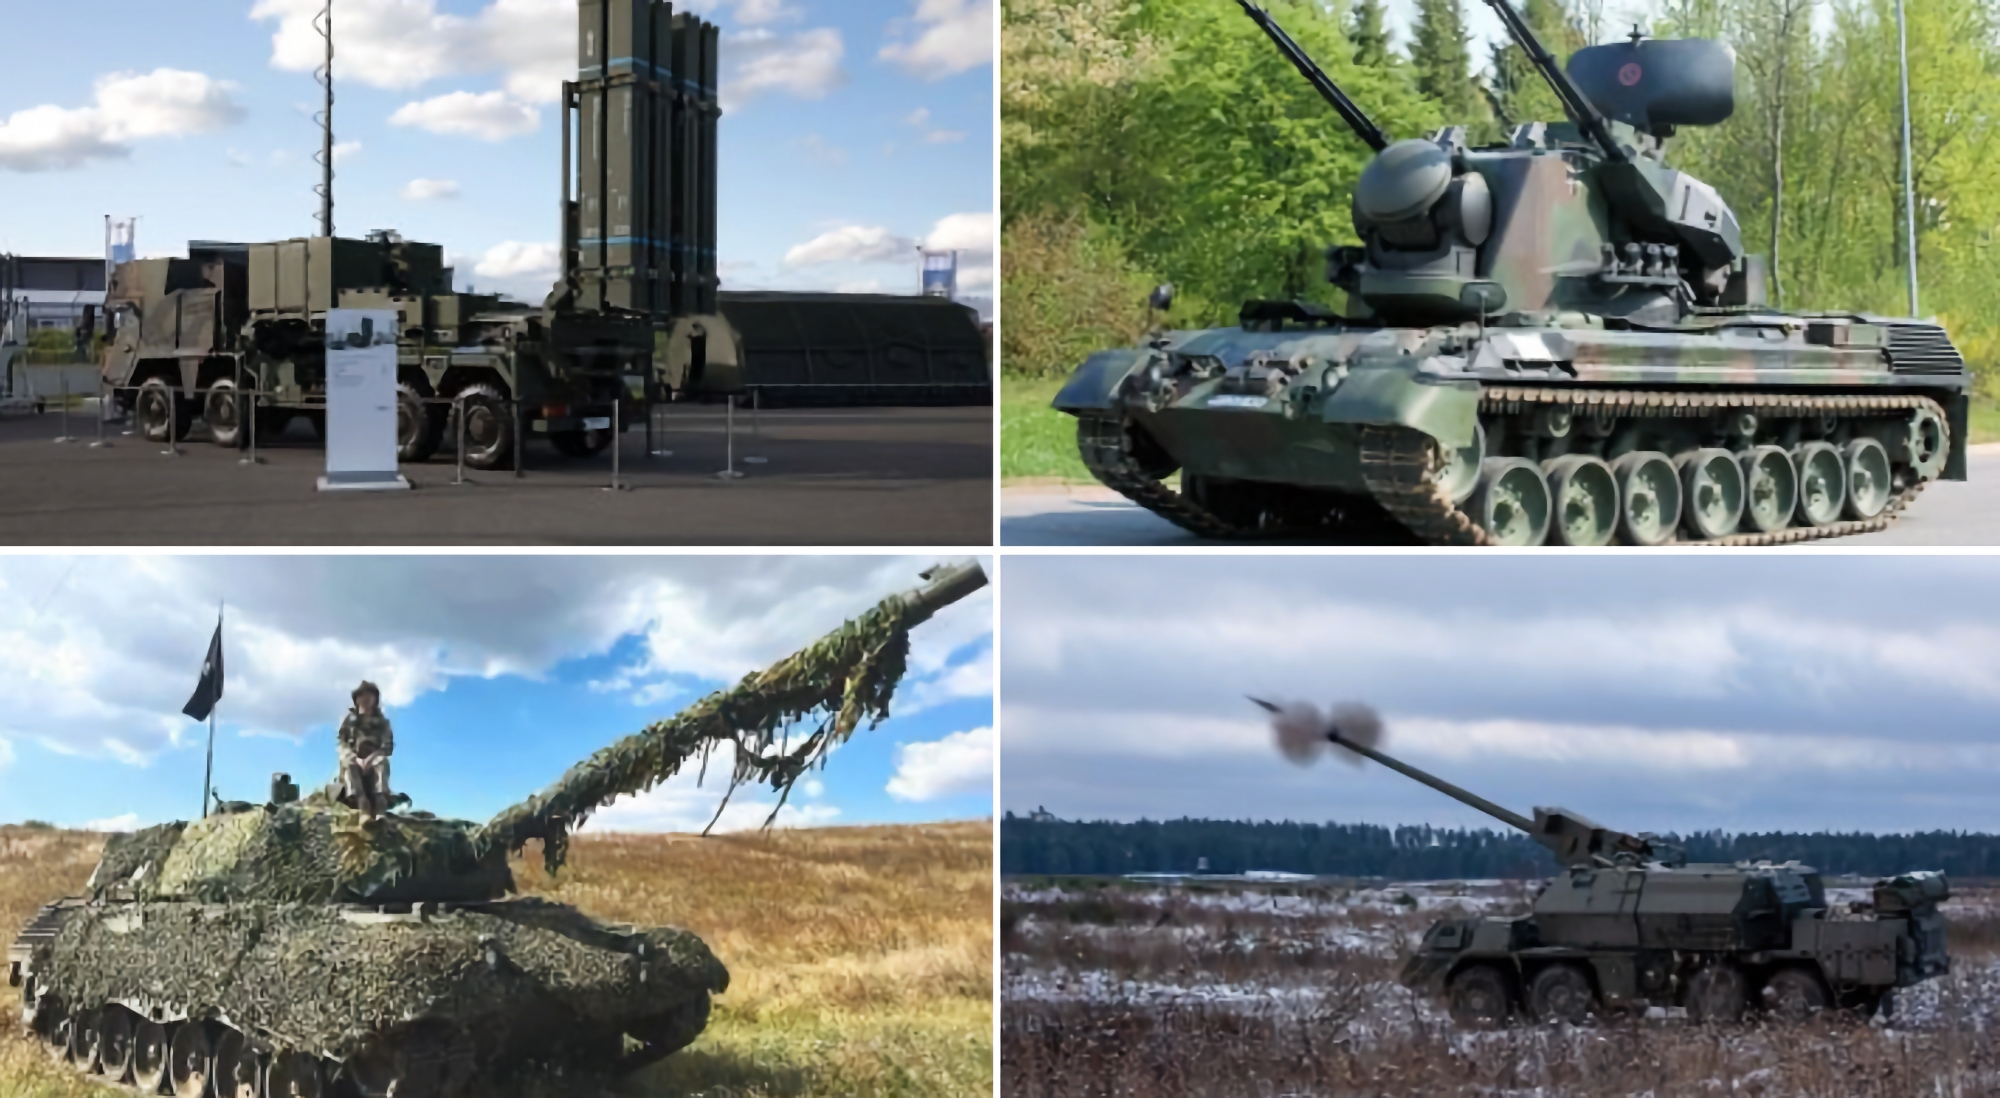 ЗРК IRIS-T SLM, танки Leopard 1A5, БМП Marder та інше озброєння: Німеччина розповіла, що планує передати Україні у 2024 році на суму 7.5 млрд євро